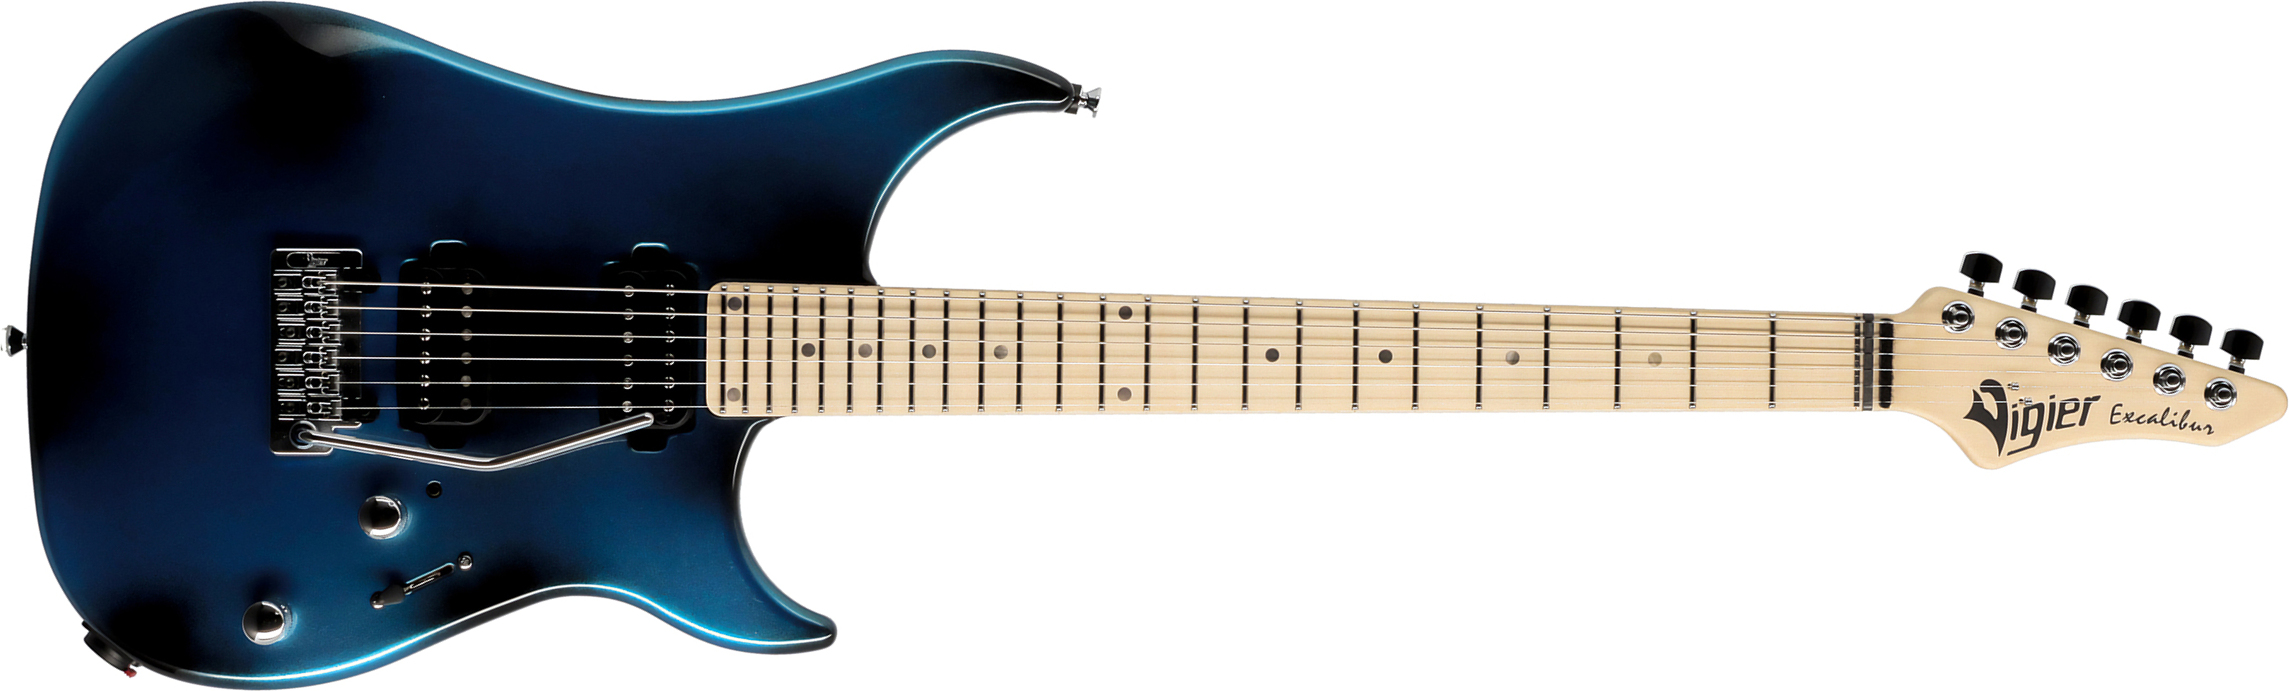 Vigier Excalibur Thirteen 2h Trem Mn - Urban Blue - Str shape electric guitar - Main picture